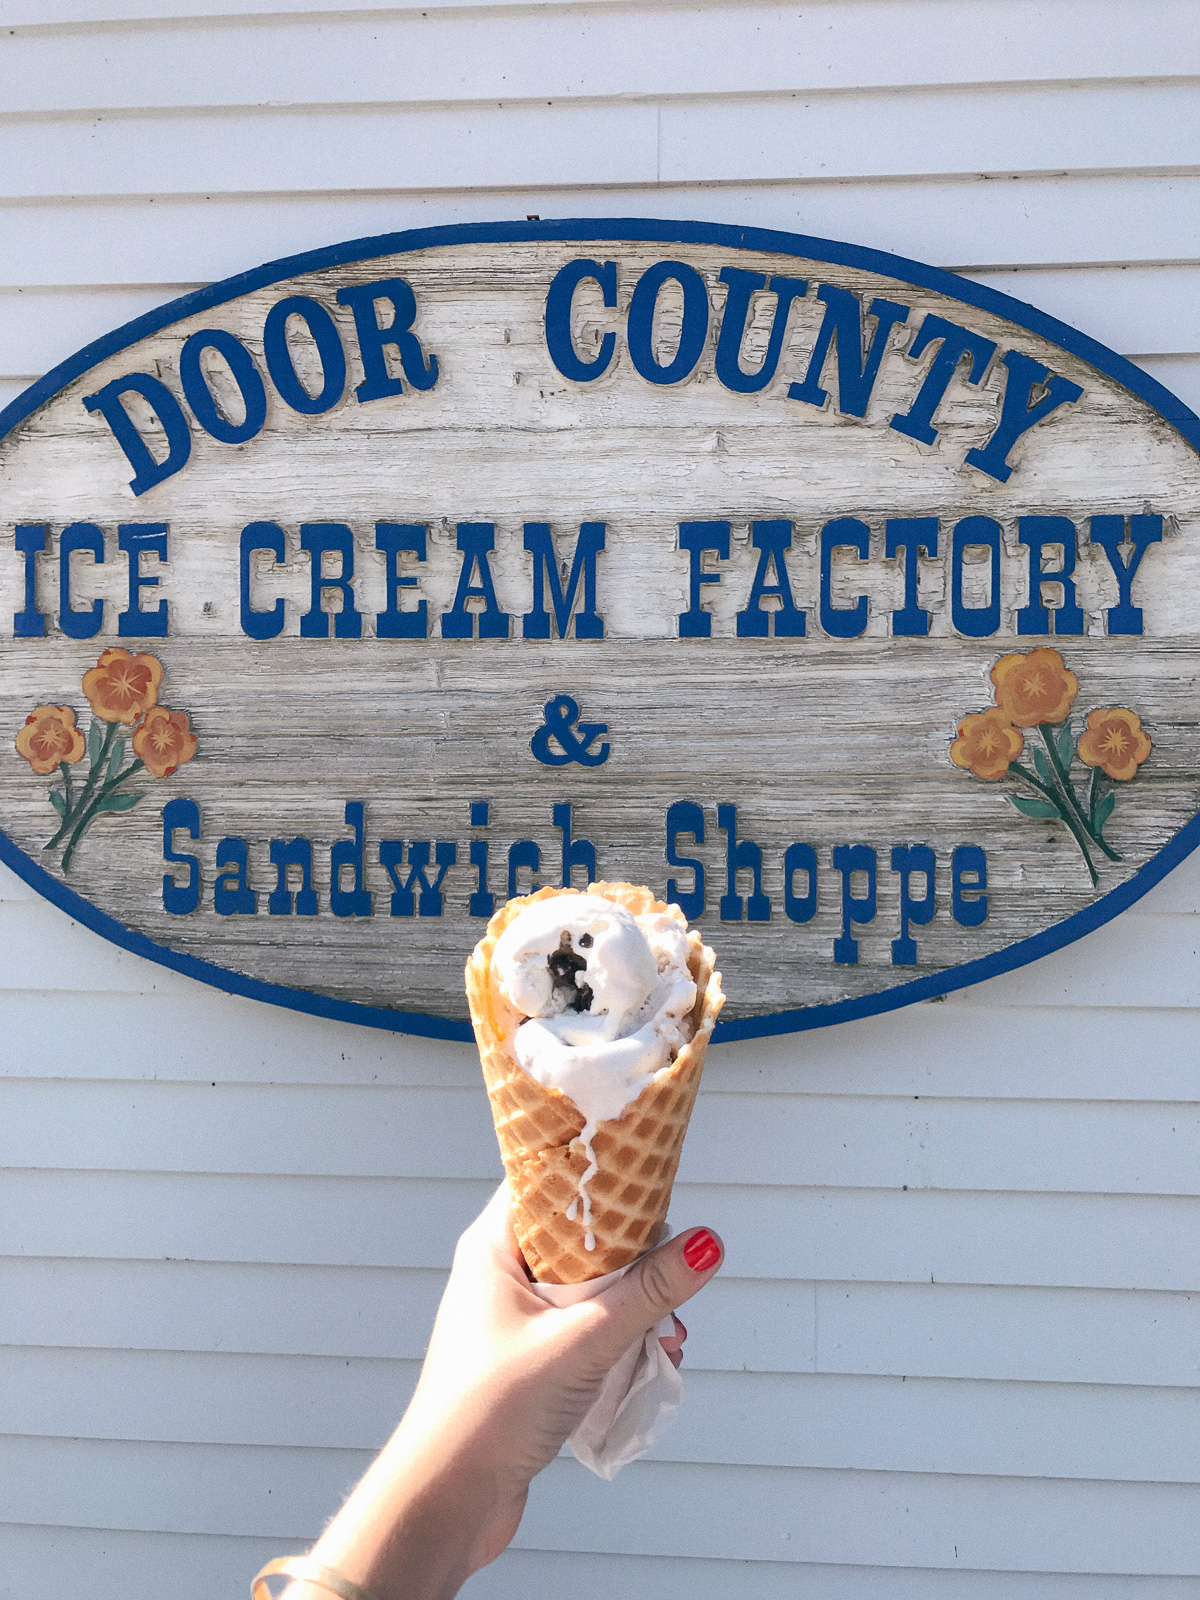 Door County Ice Cream Factory